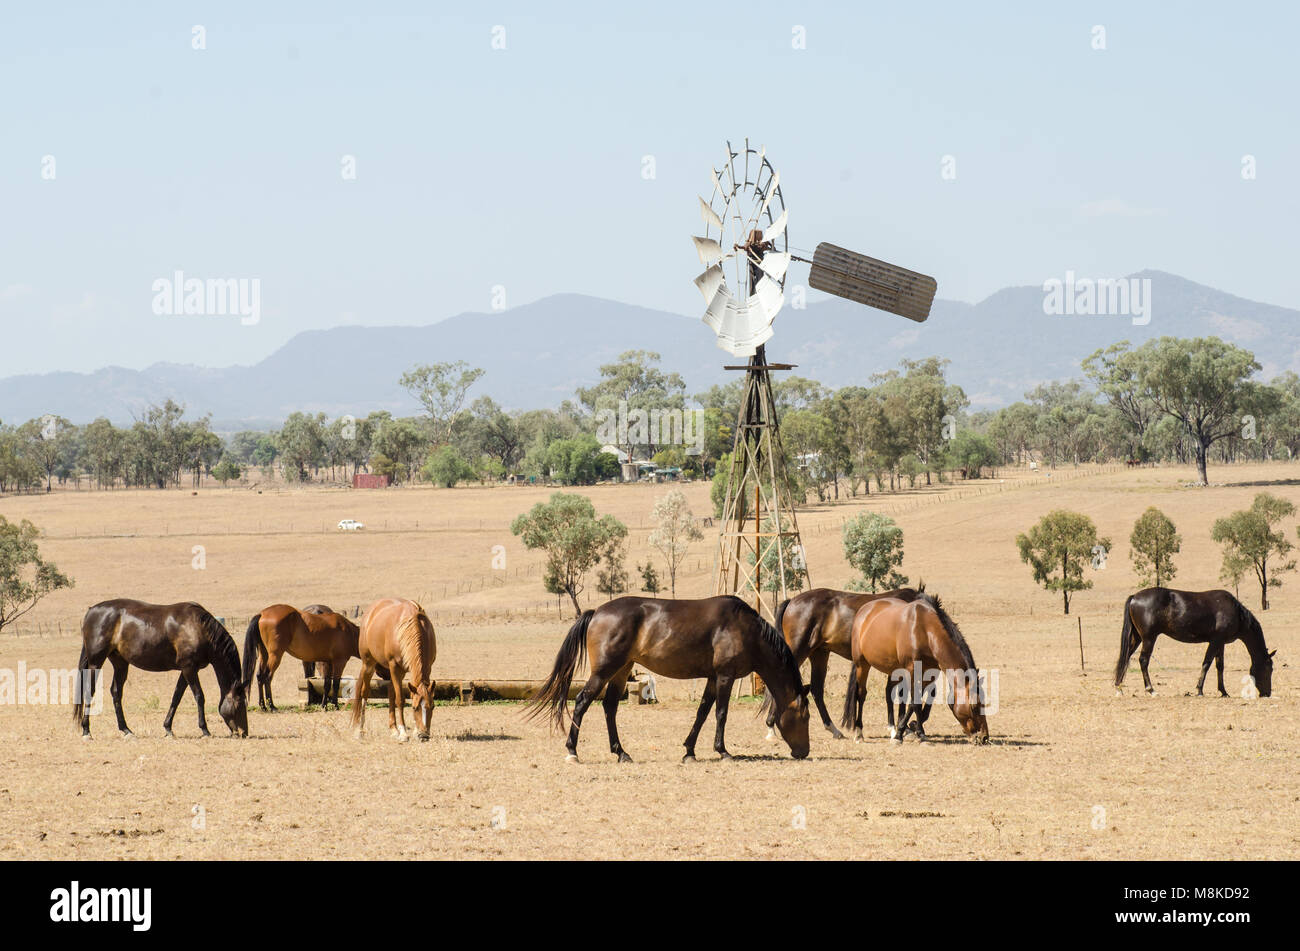 La récupération des chevaux pour l'alimentation animale dans des conditions de sécheresse autour d'un moulin à vent'abreuvoir. Ciel voilé à proximité de feux de brousse, NSW Australie Banque D'Images